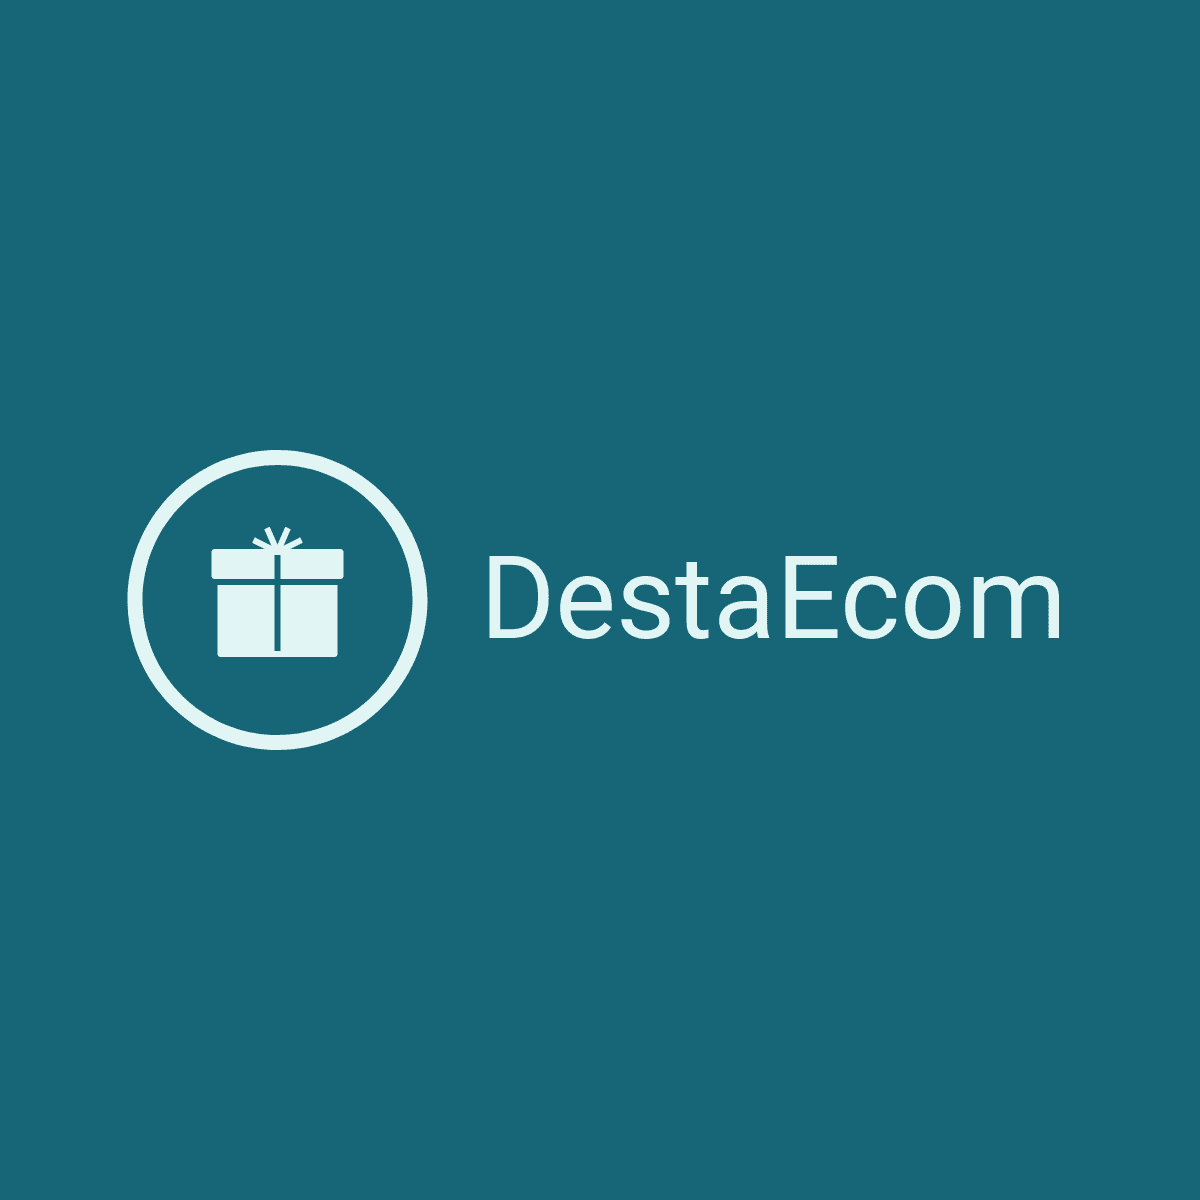 DestaEcom